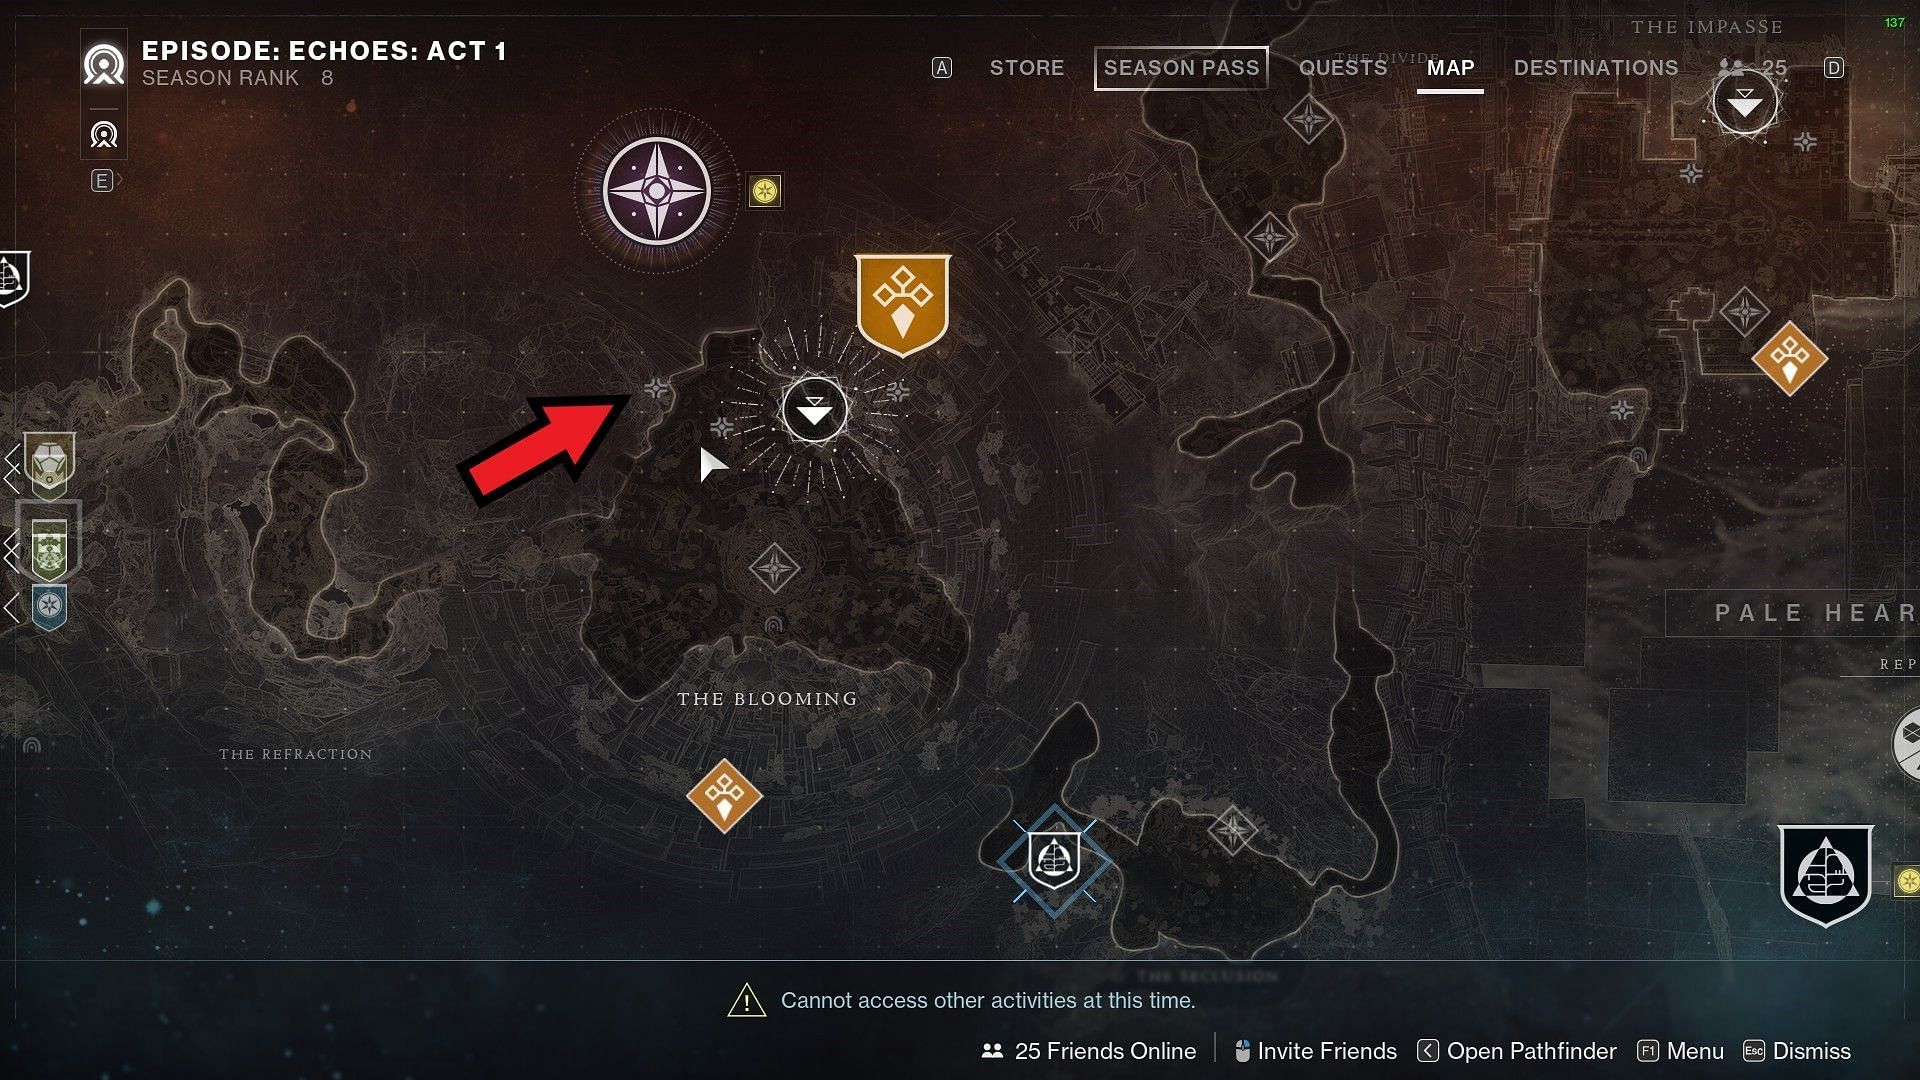 Destination chest icon in Destiny 2 map (Image via Bungie)